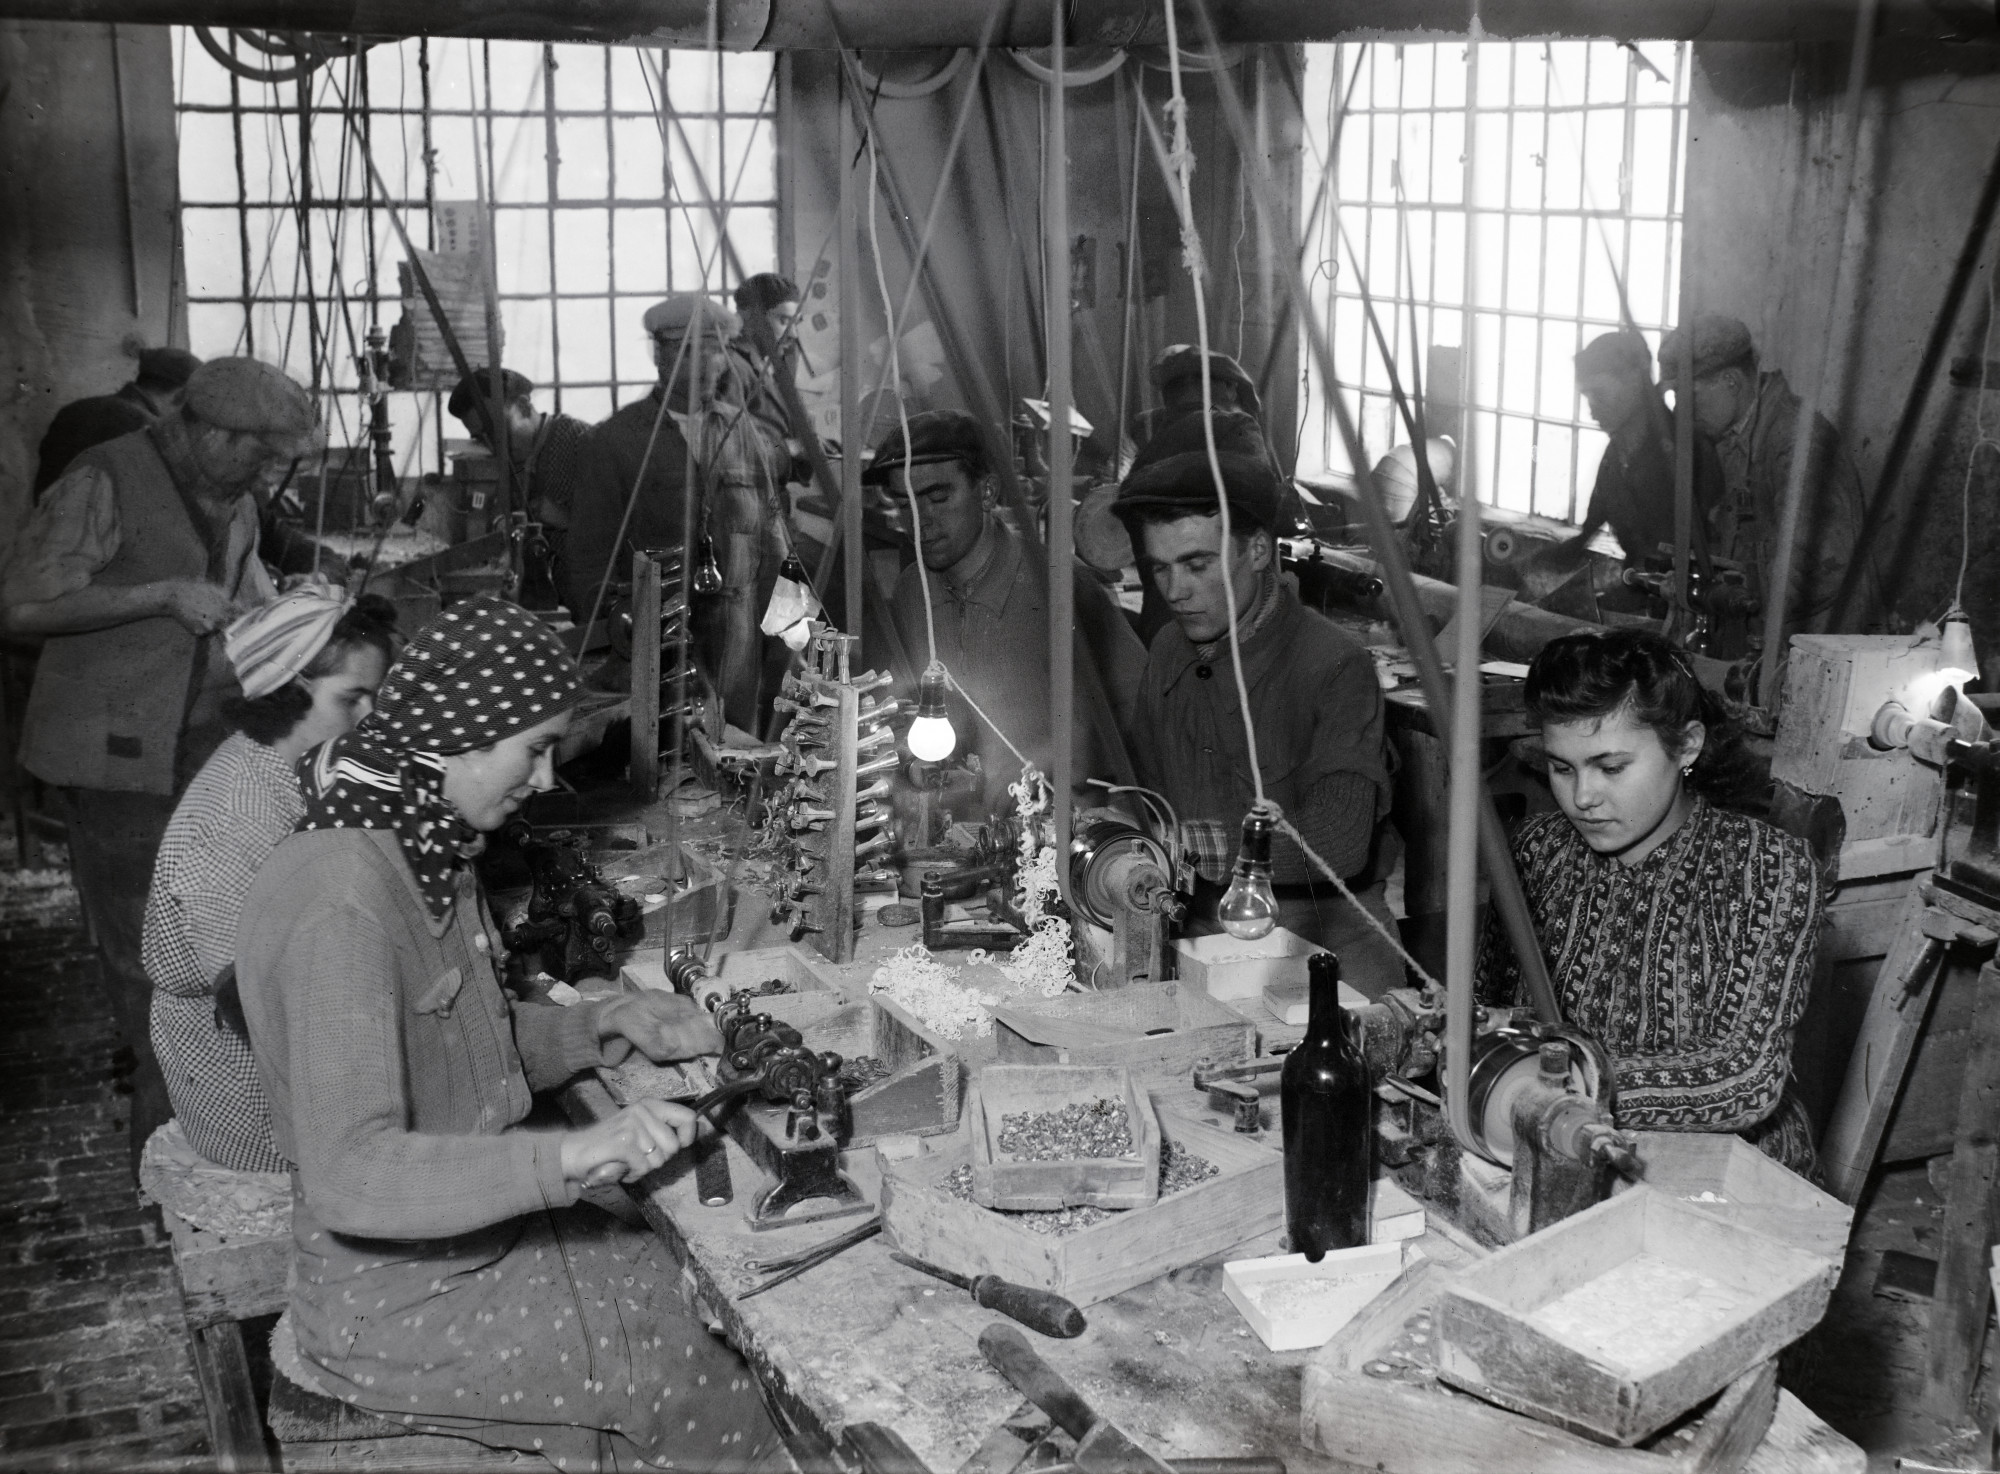 Gombgyártó műhely az 1930-as évek végén